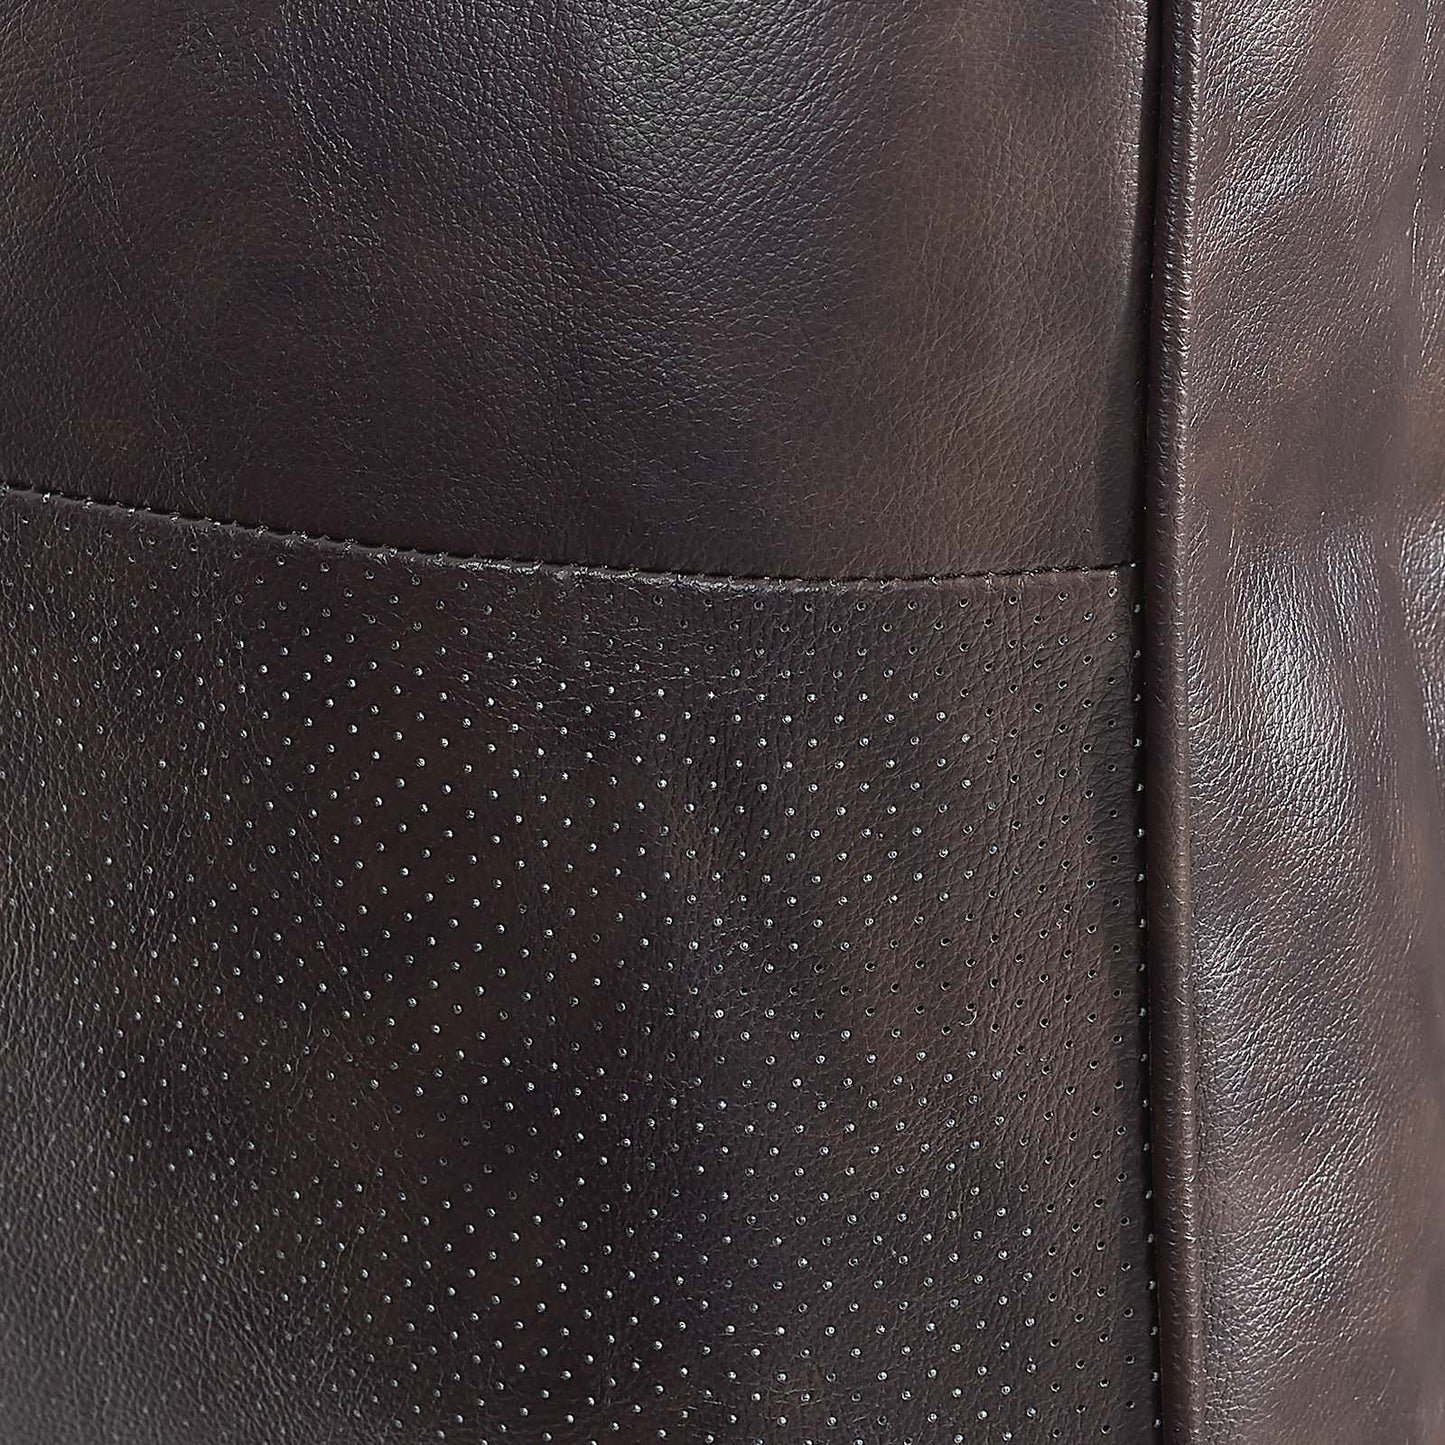 Valour Leather Armchair Brown EEI-5869-BRN